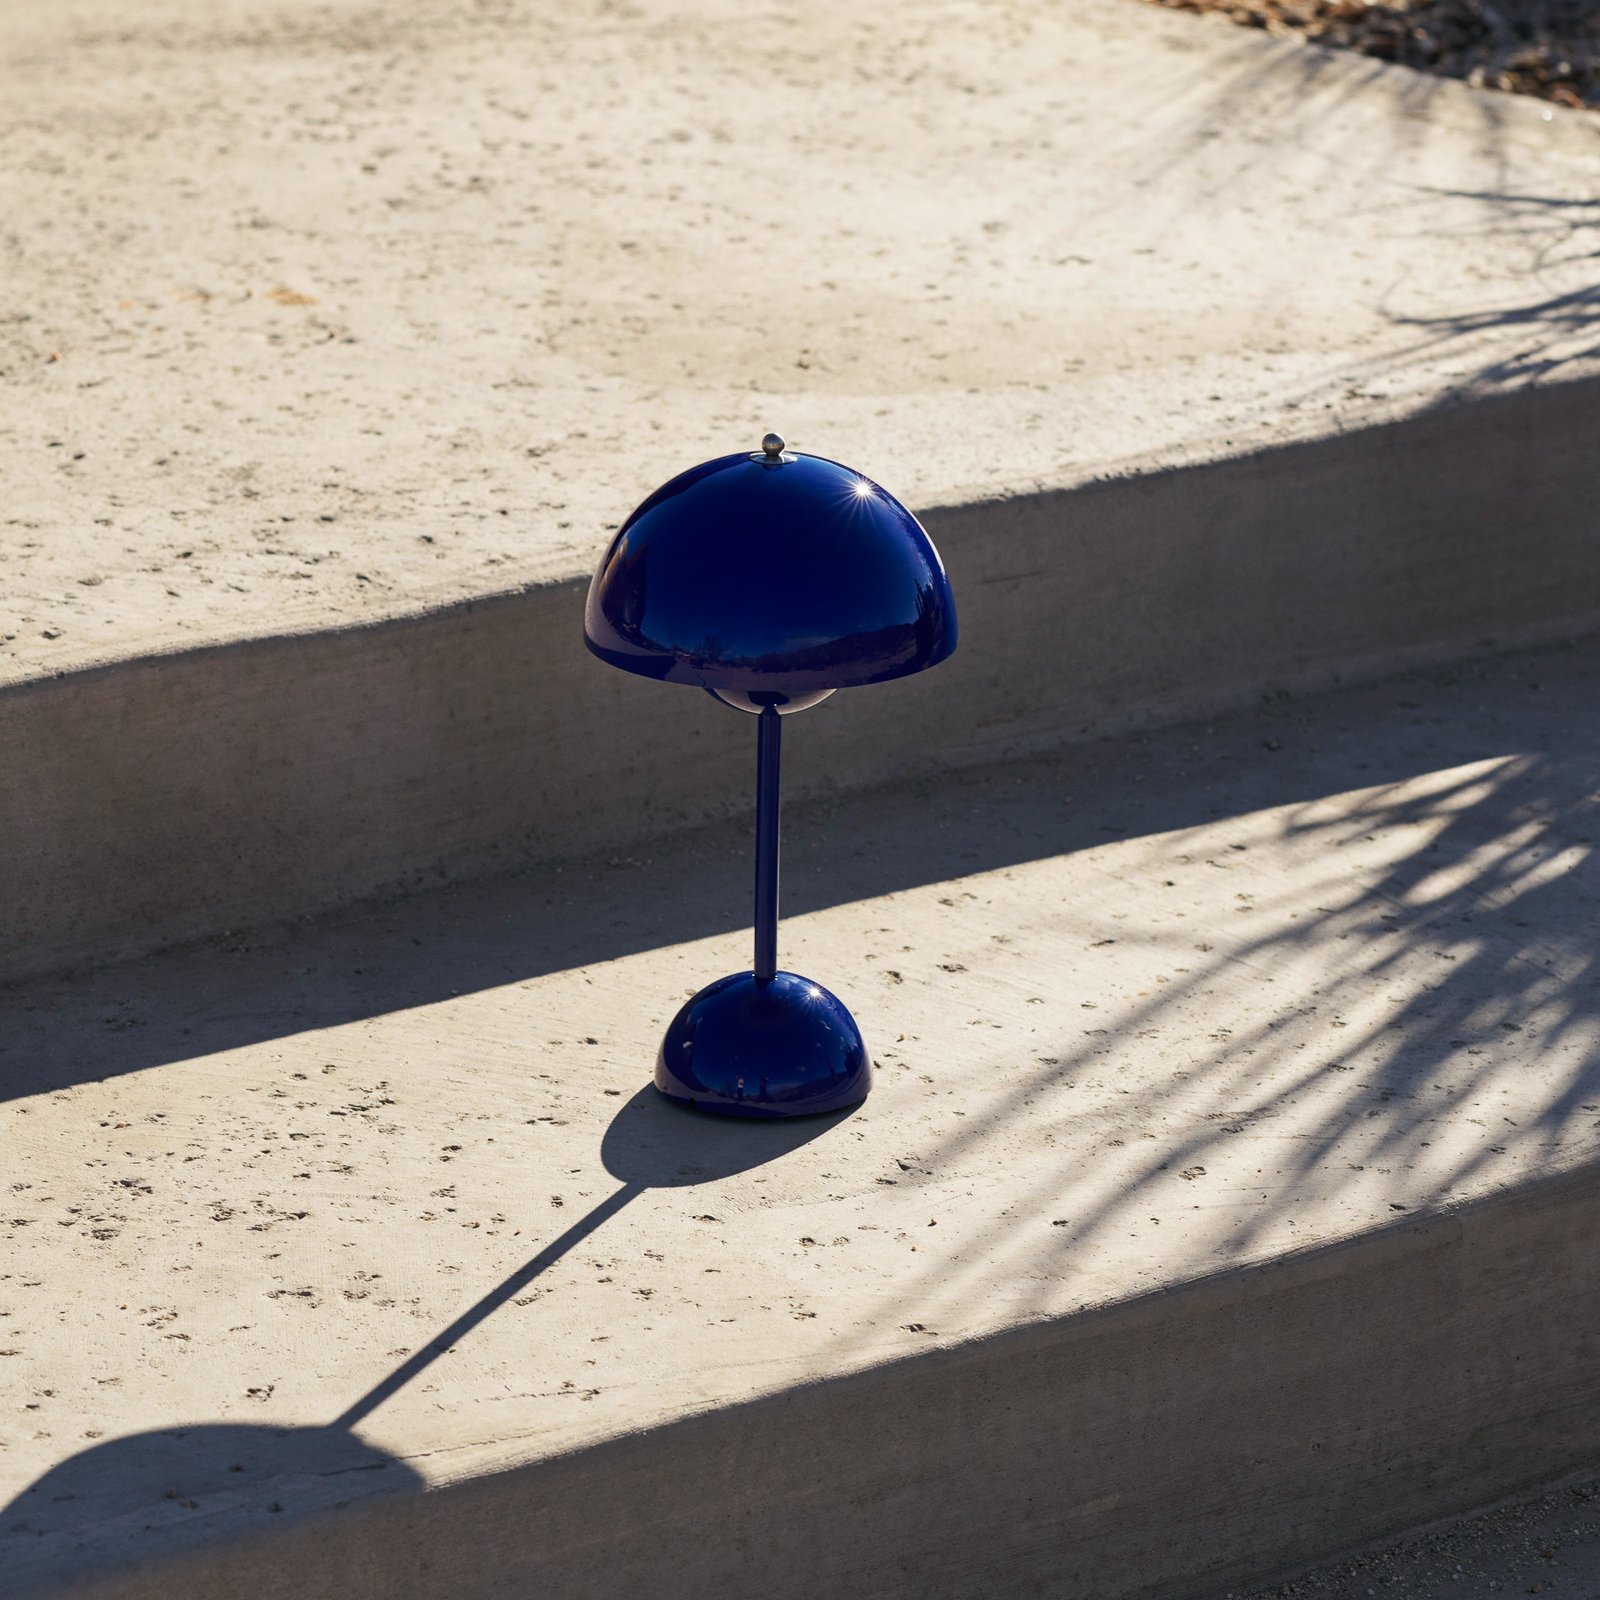 &Tradition Akumulatorowa lampa stołowa LED Flowerpot VP9, kobaltowy